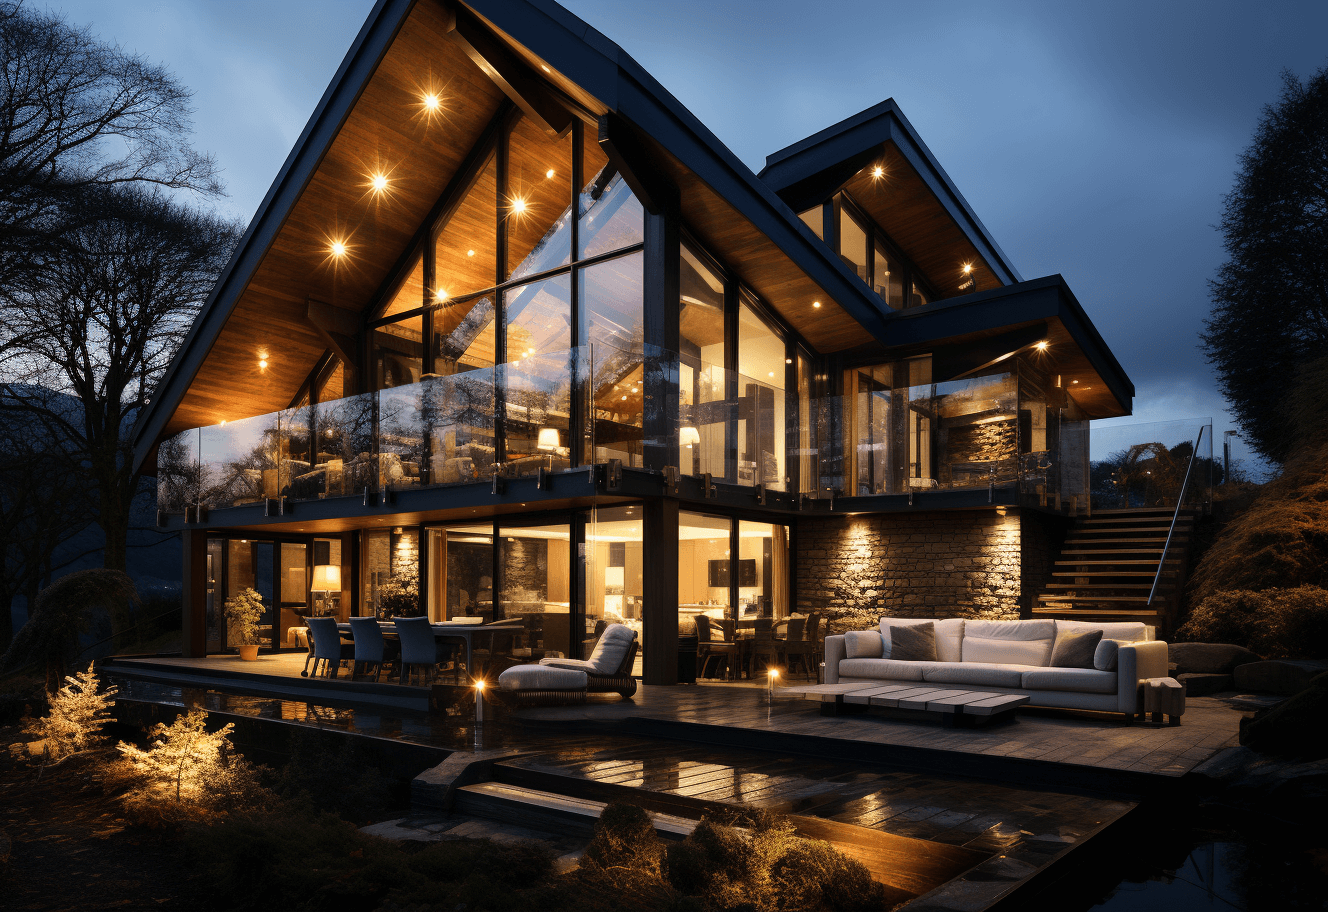 2 Storey luxury timber house